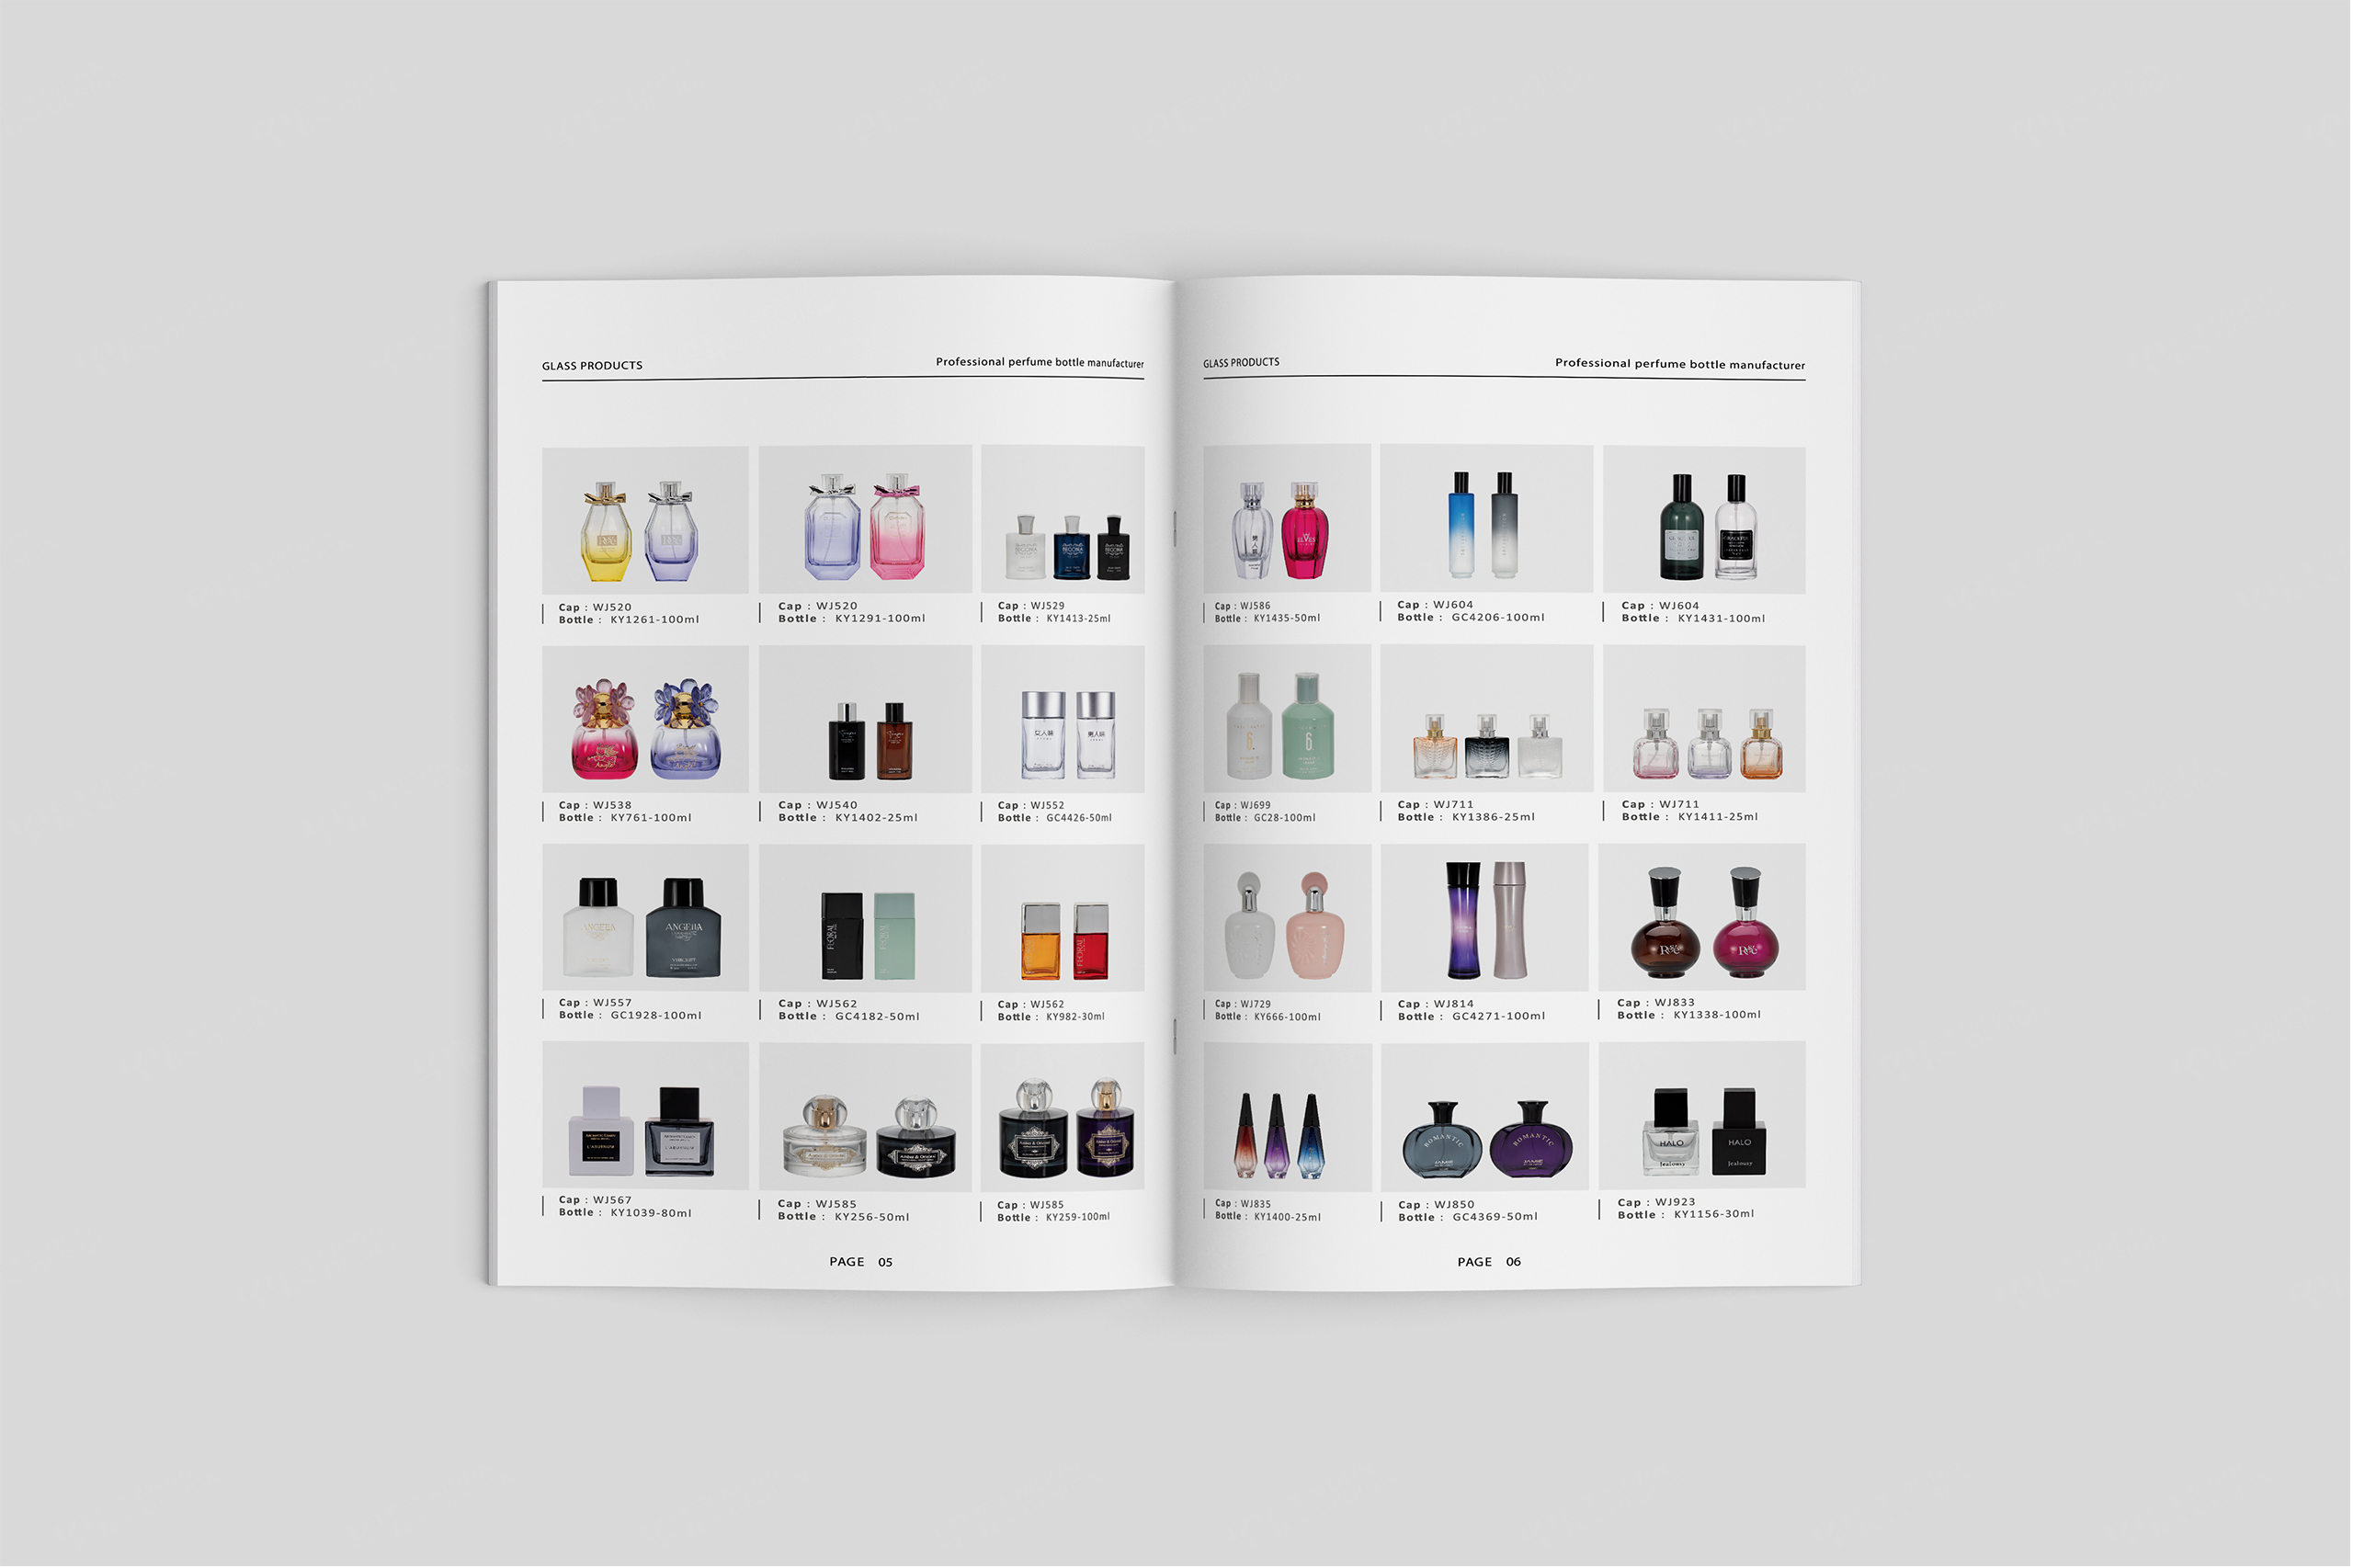 香水瓶样本设计,玻璃瓶样本设计,香水瓶样本印刷,国超,样本设计,印刷,公司